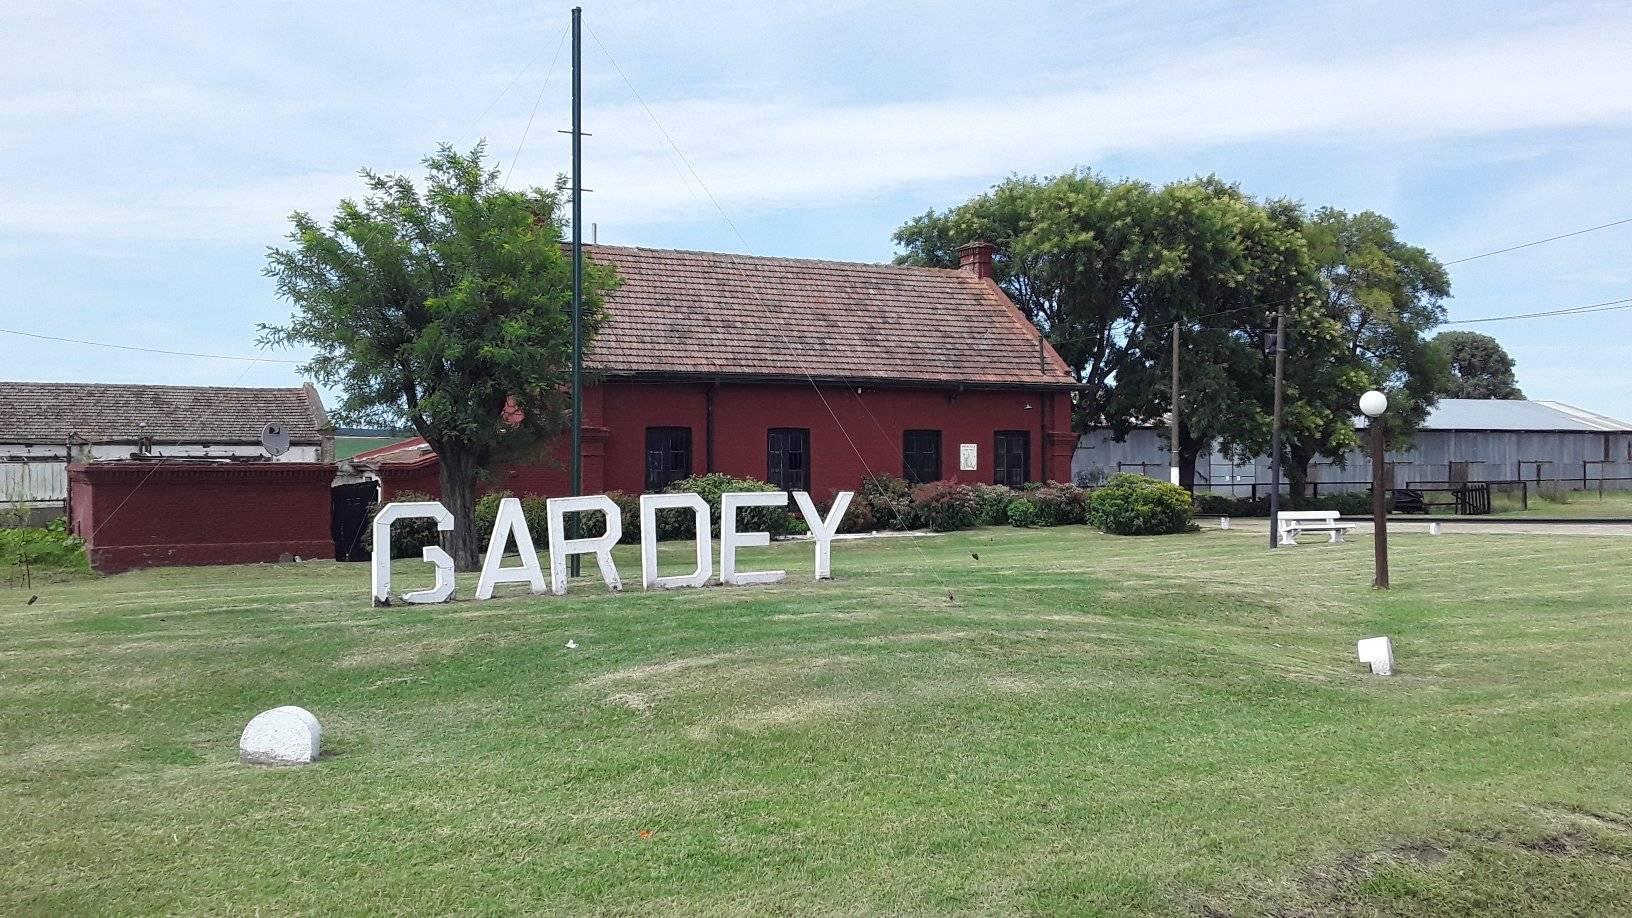 Gardey fue elegido como uno de los pueblos turísticos para motorizar su desarrollo productivo